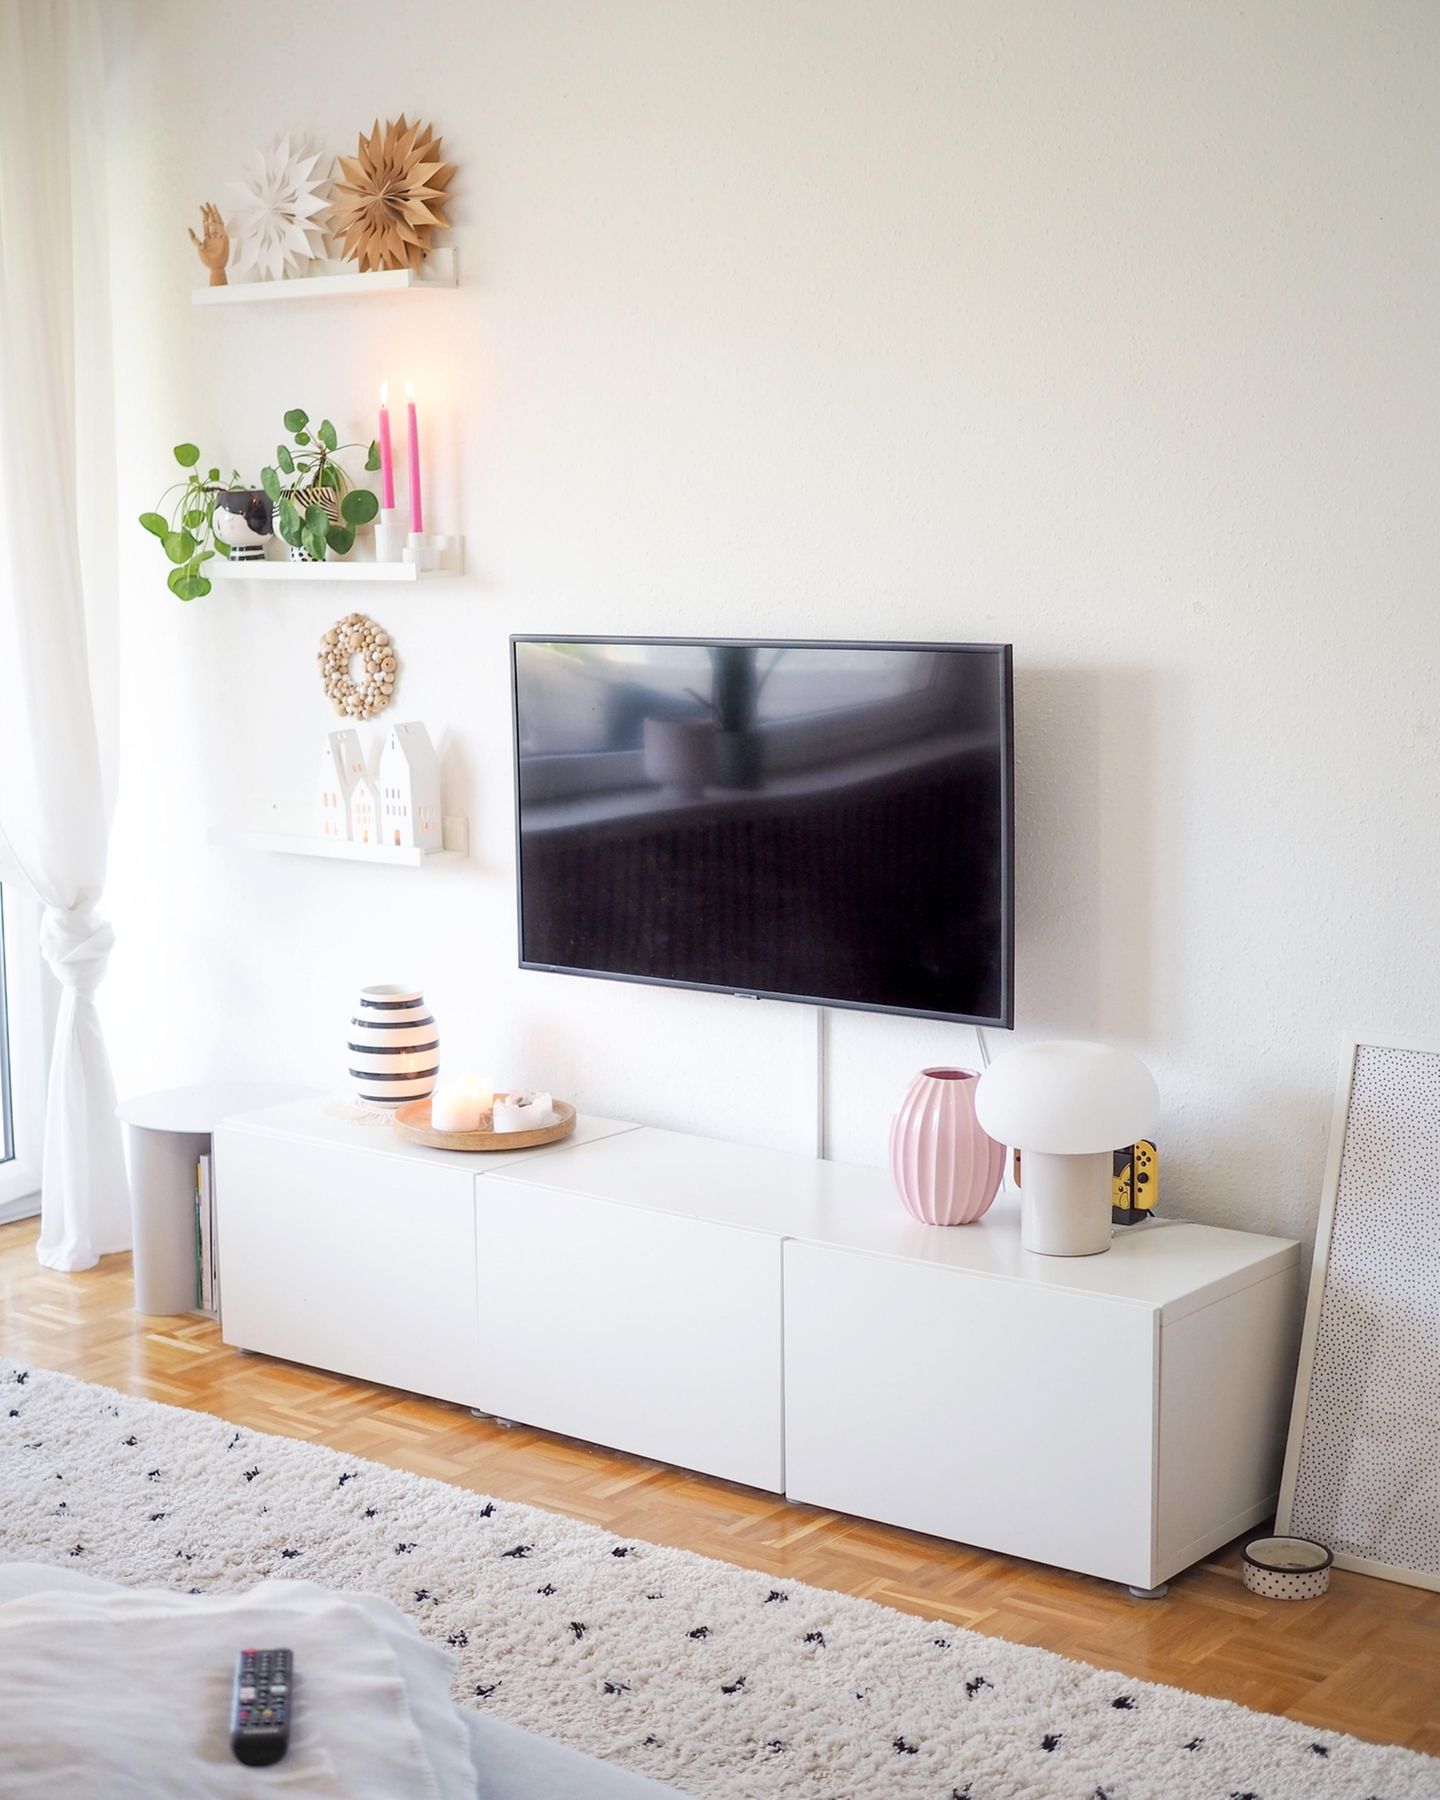 Langes weißes Sideboard als TV-Möbel mit Vasen und Deko auf einem Parkettboden